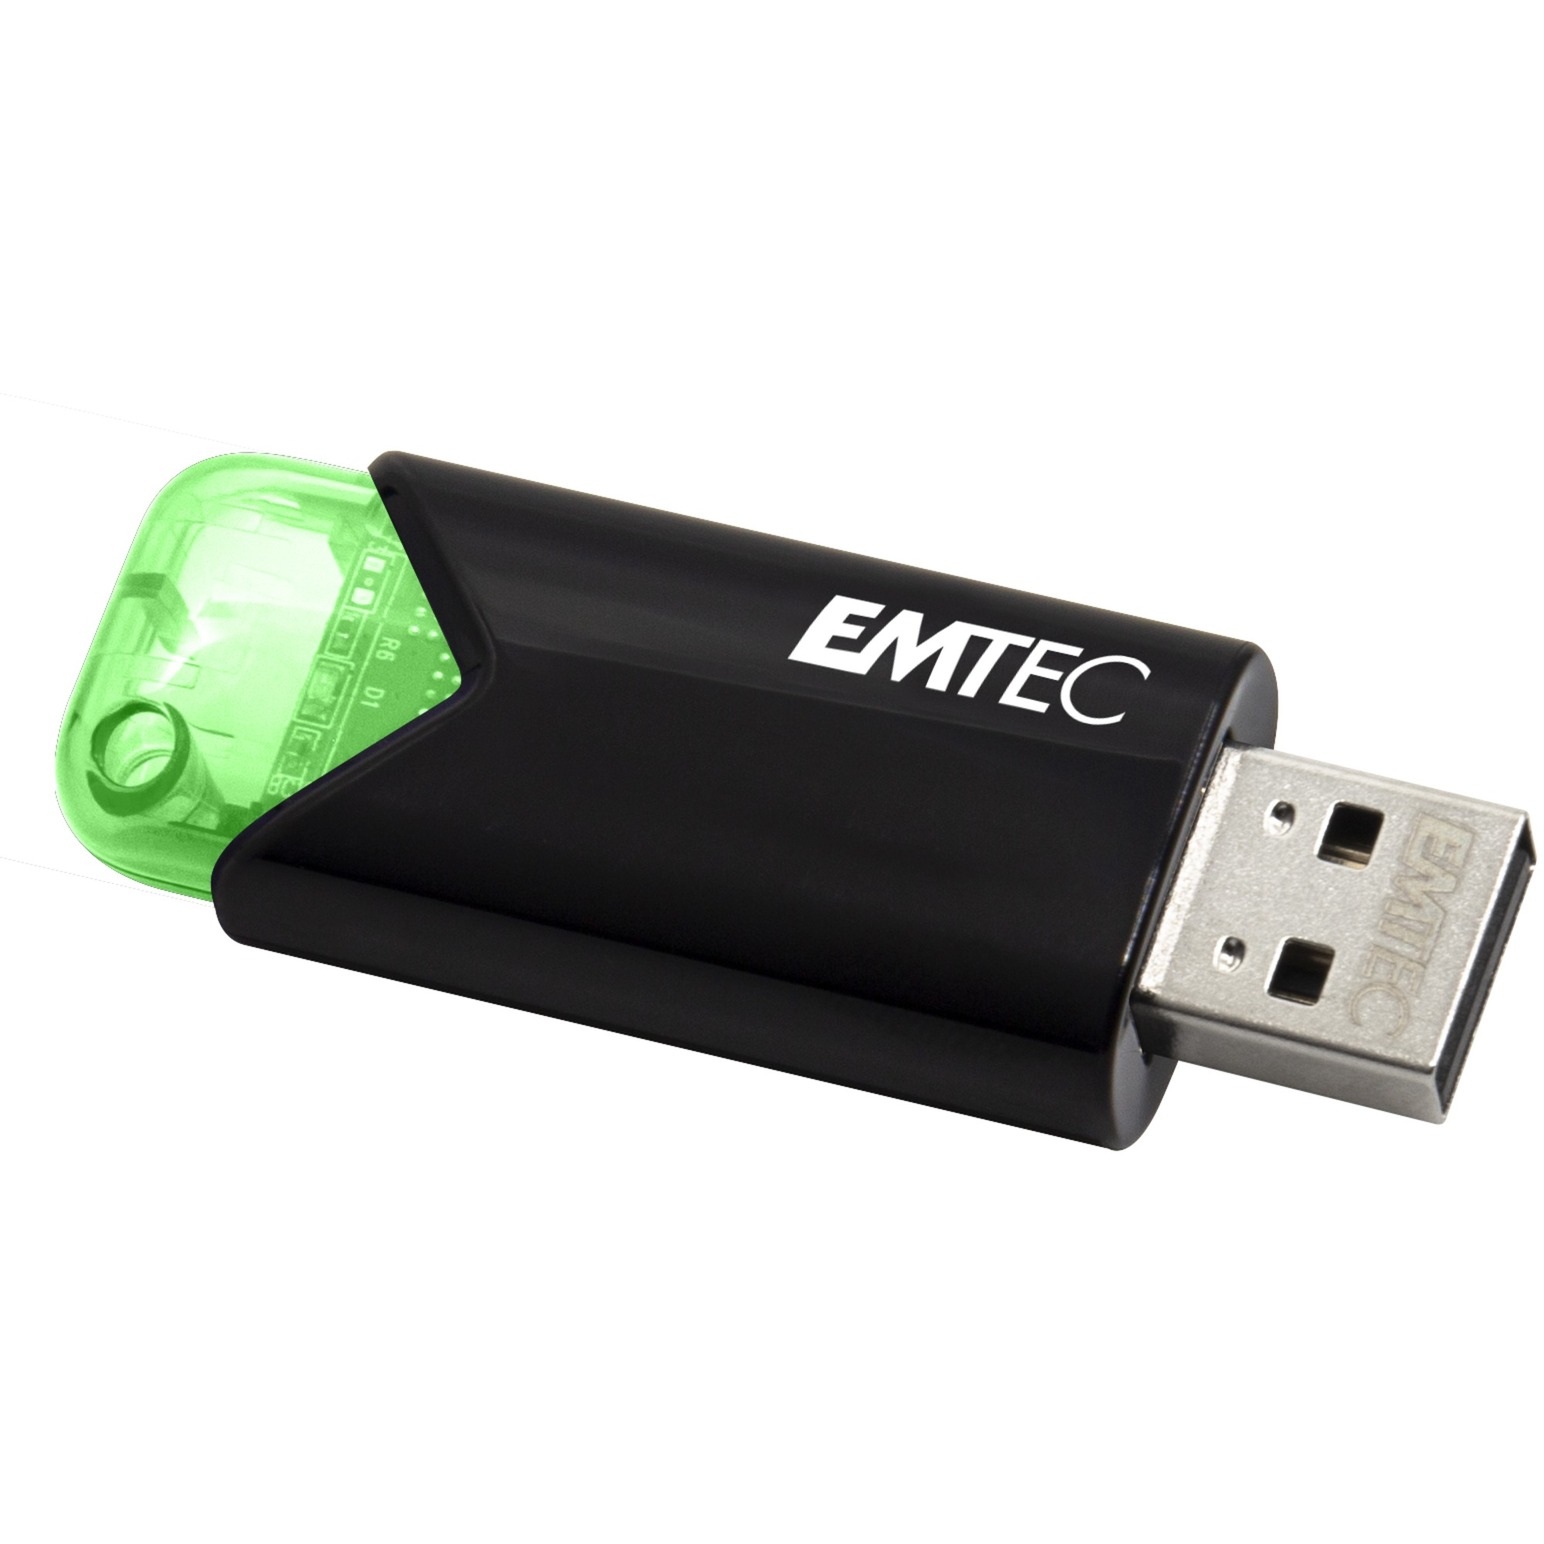 Image of Alternate - B110 Click Easy 64 GB, USB-Stick online einkaufen bei Alternate